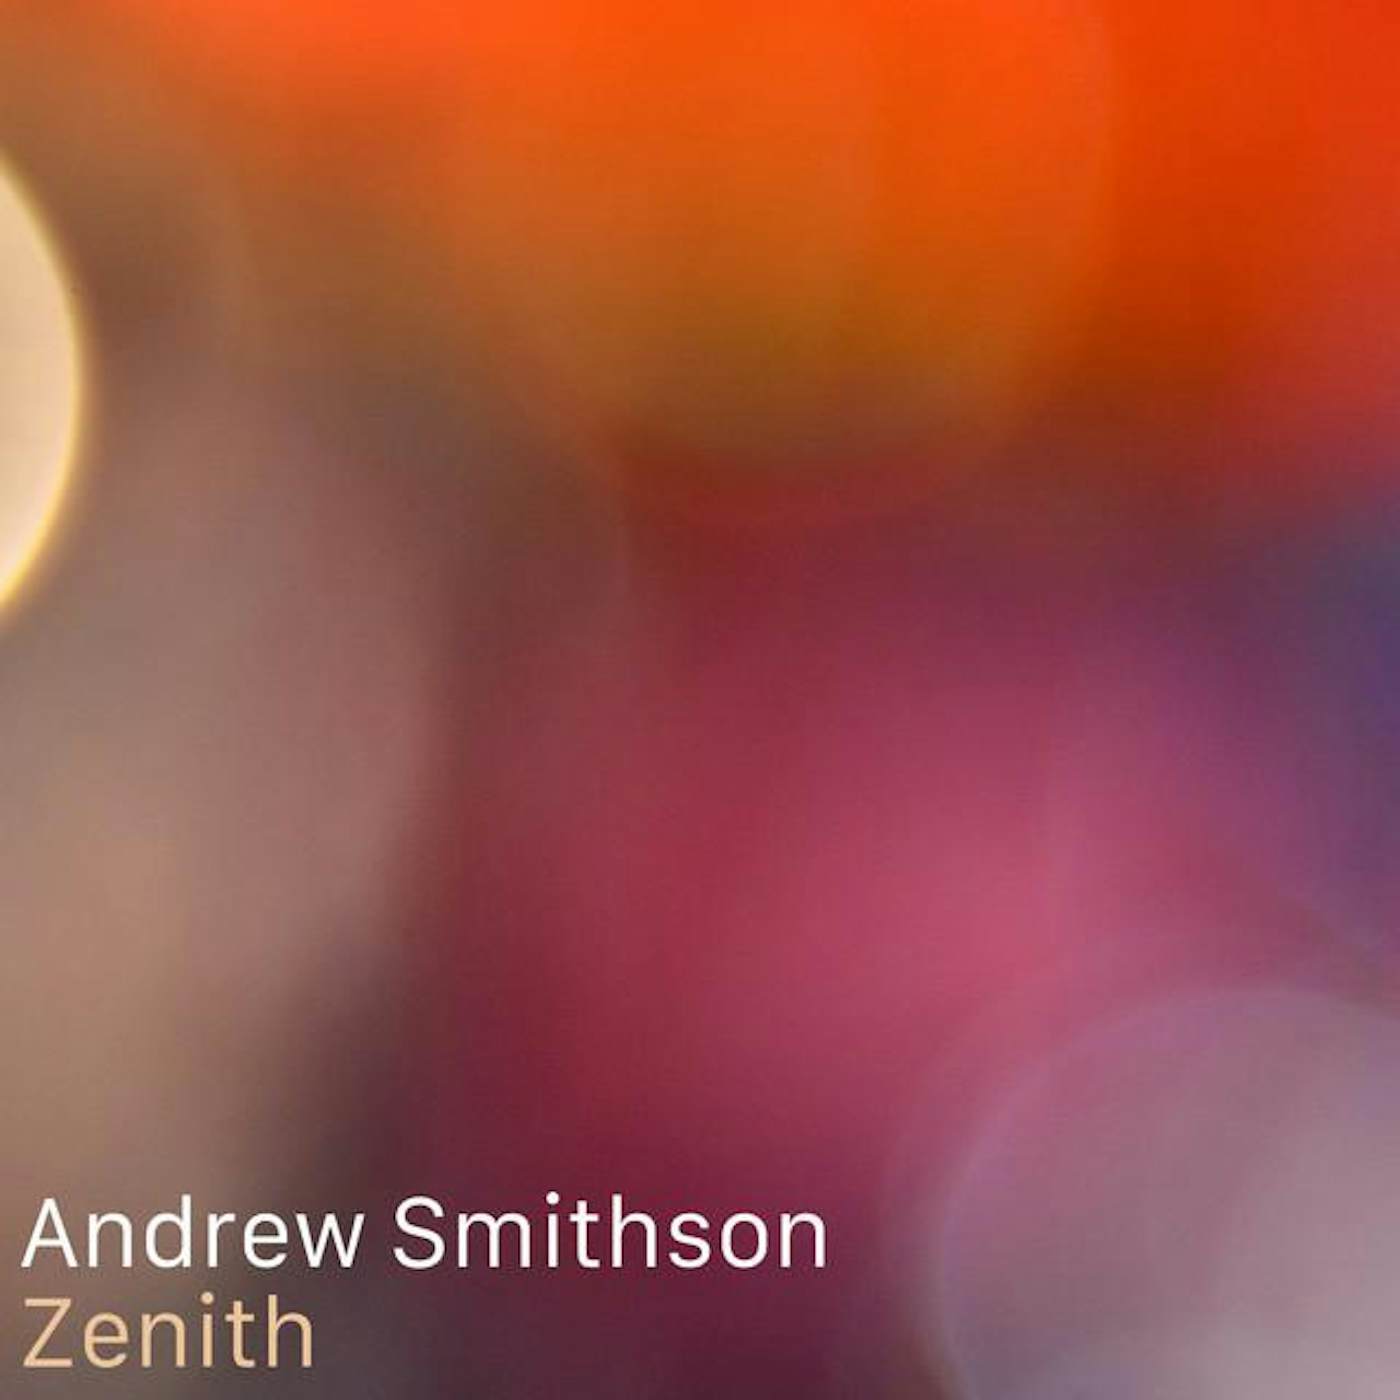 Andrew Smithson